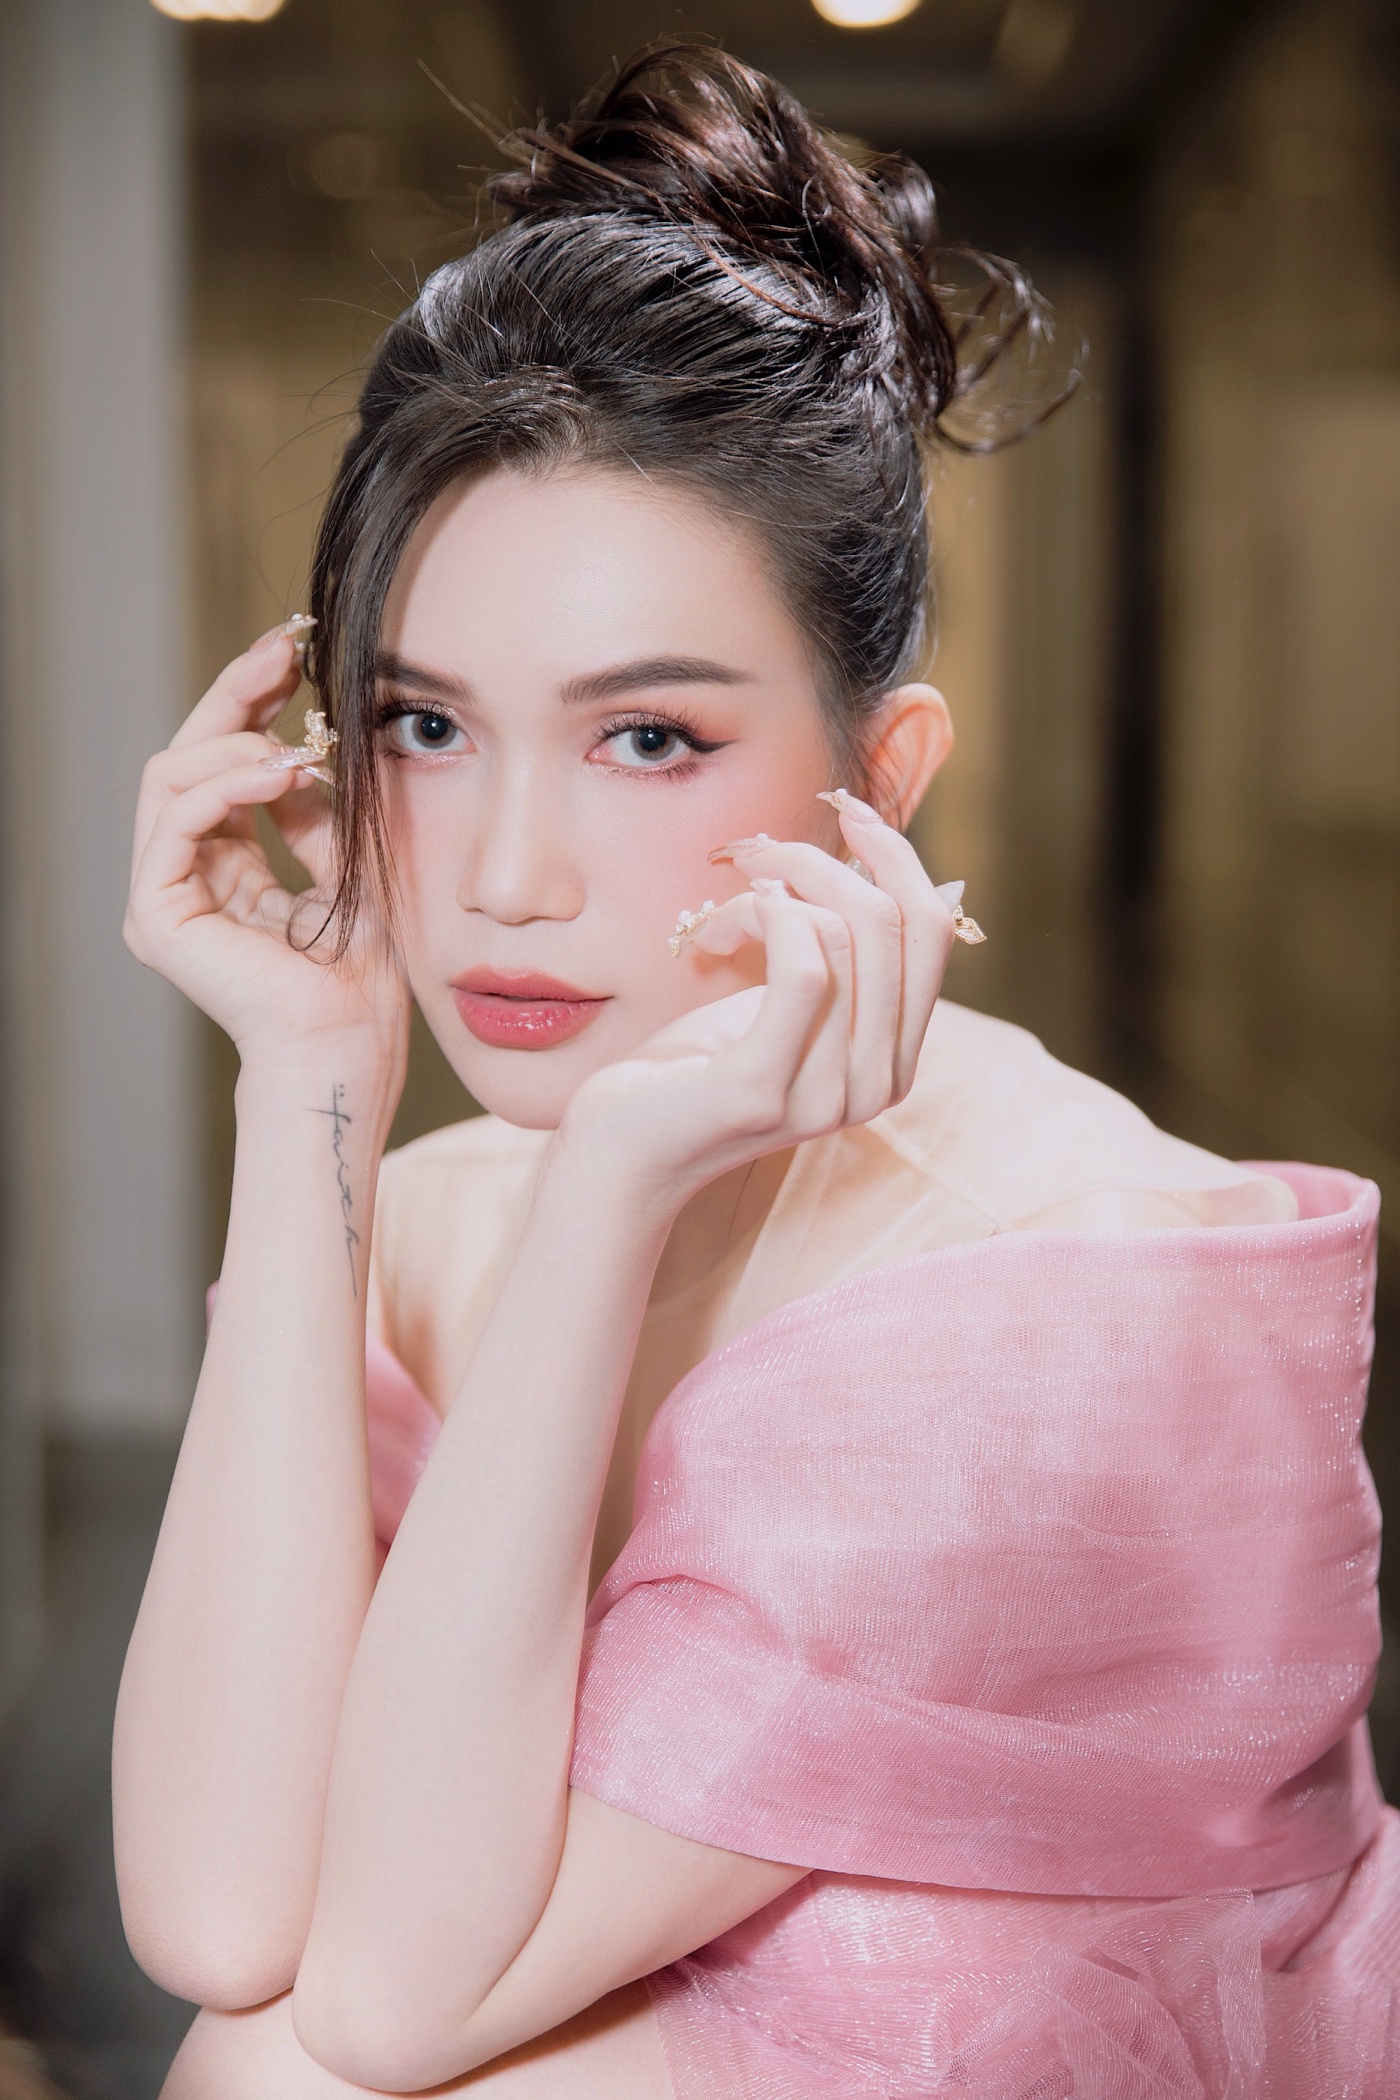 Sĩ Thanh hiện vẫn đầu tư để trở thành một beauty blogger được nhiều người yêu mến.